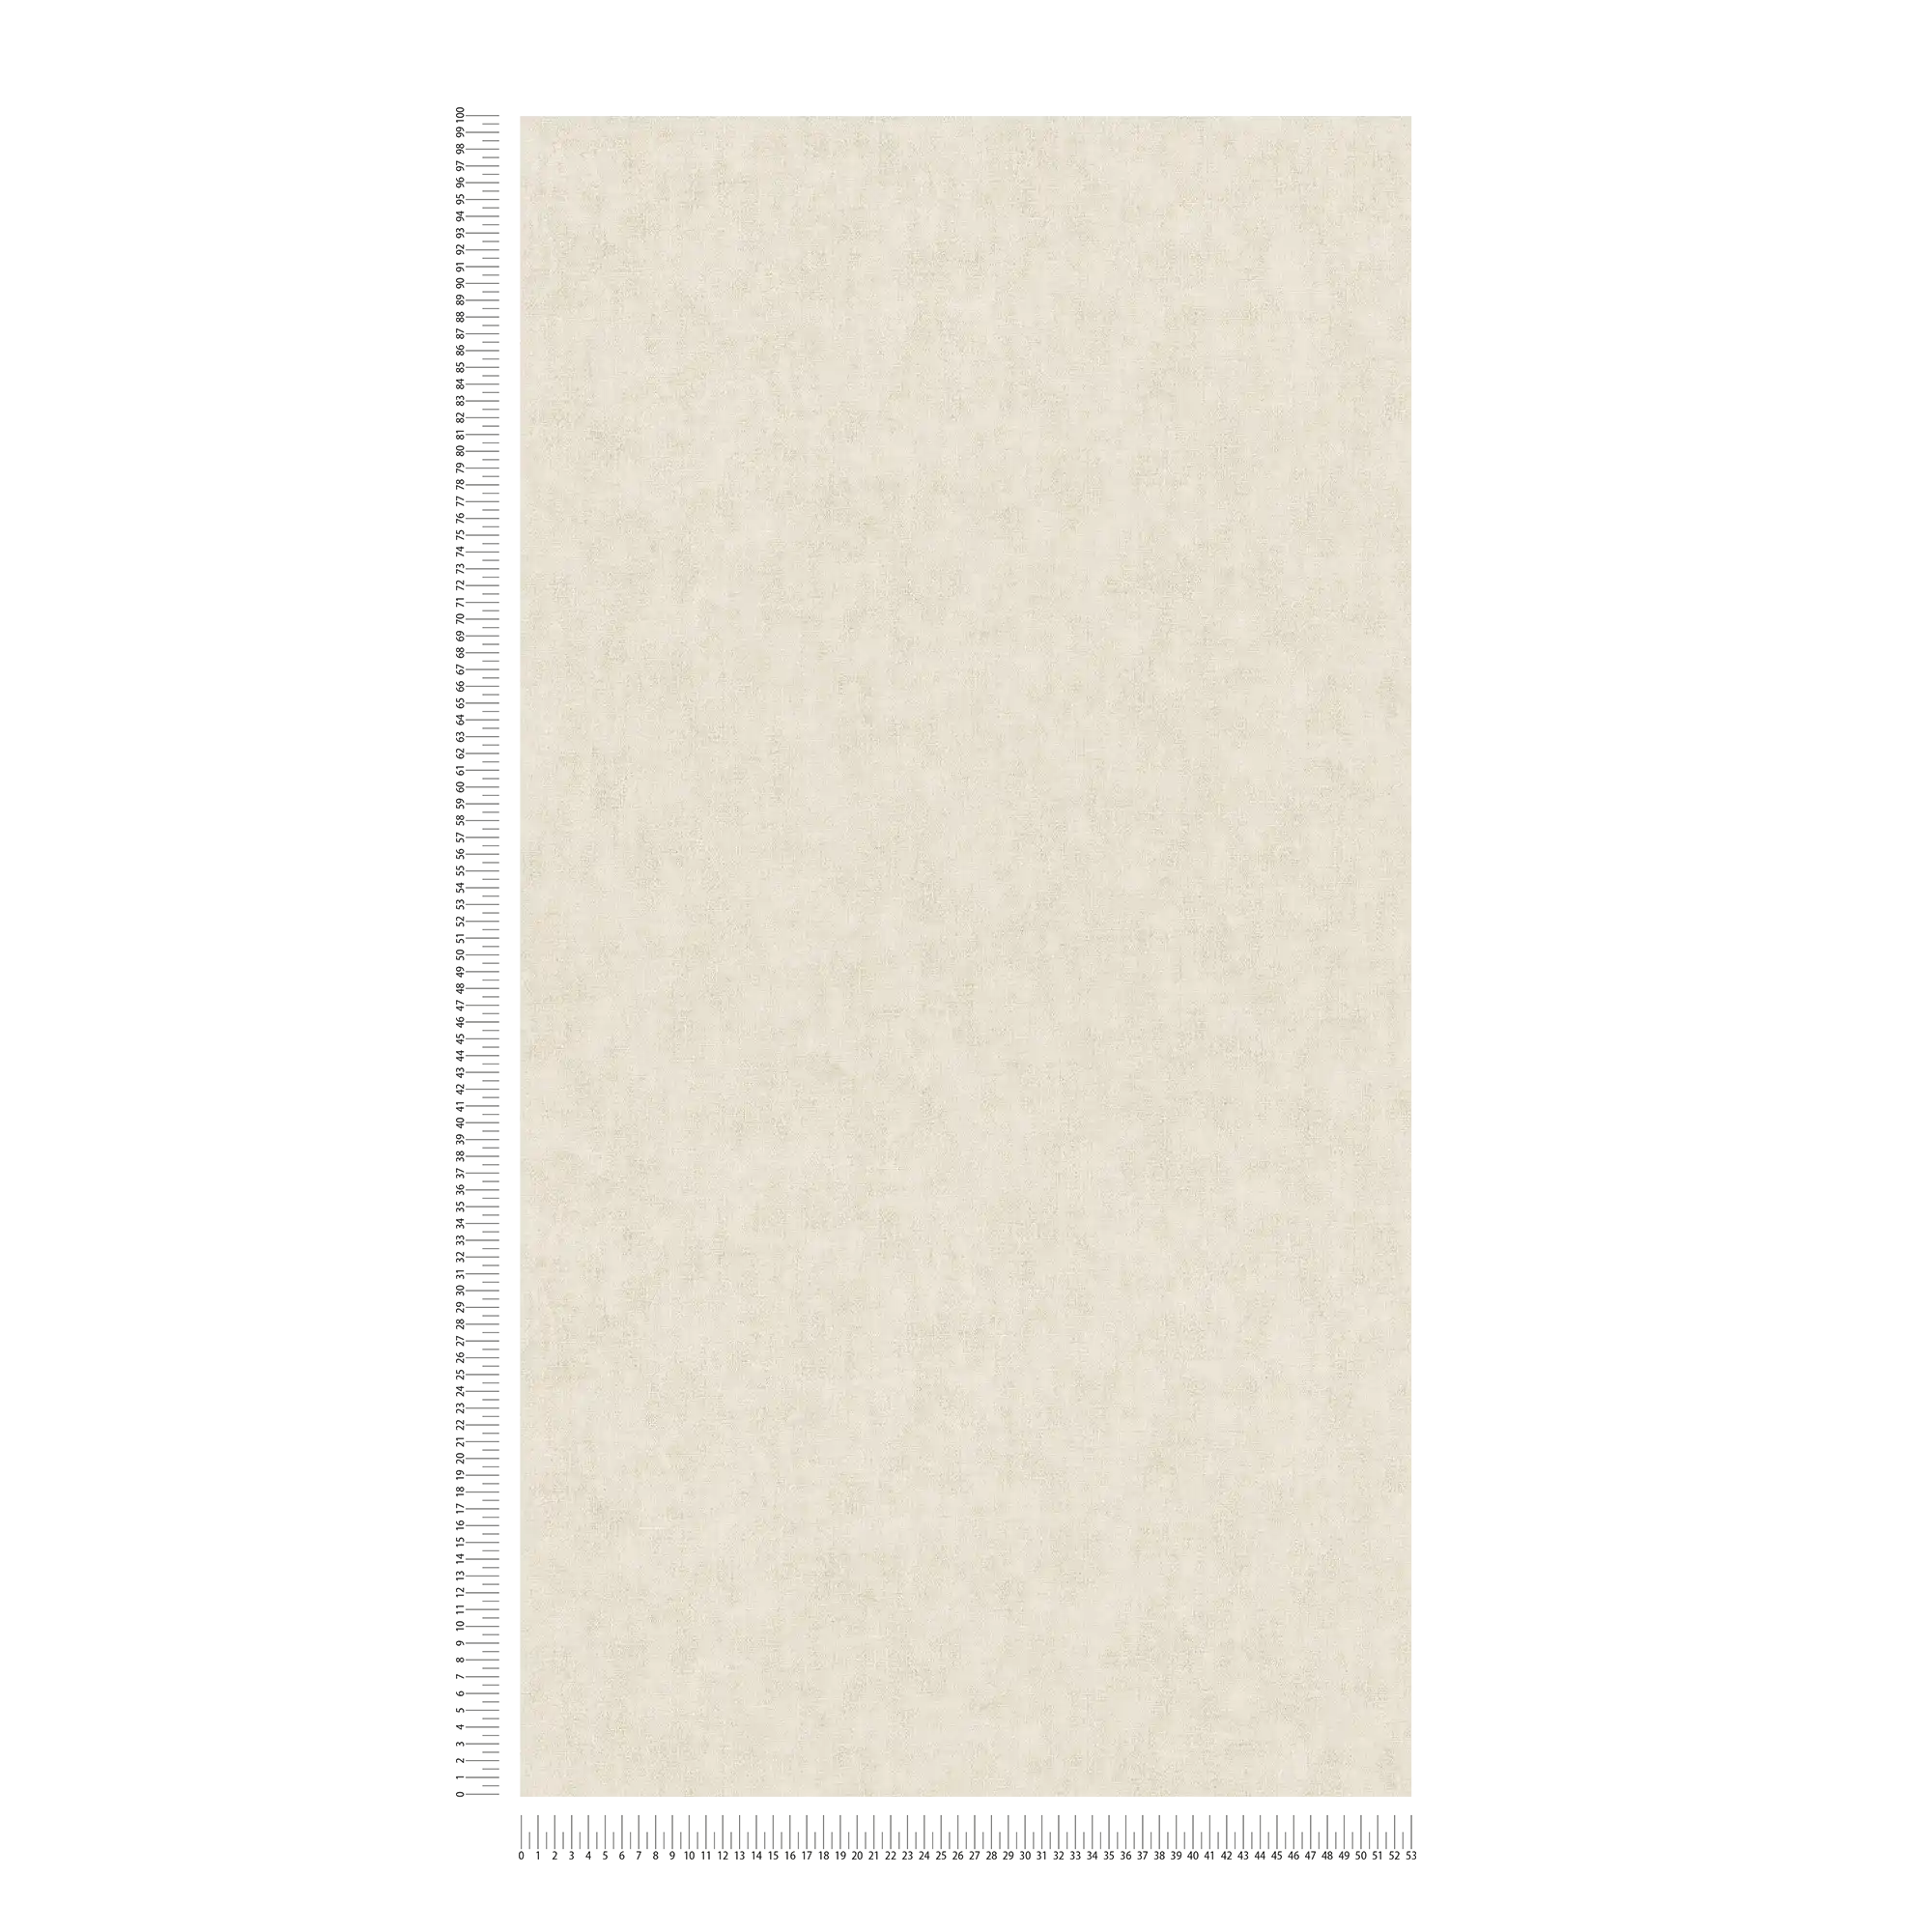             Papier peint uni aspect lin de style scandinave - Beige
        